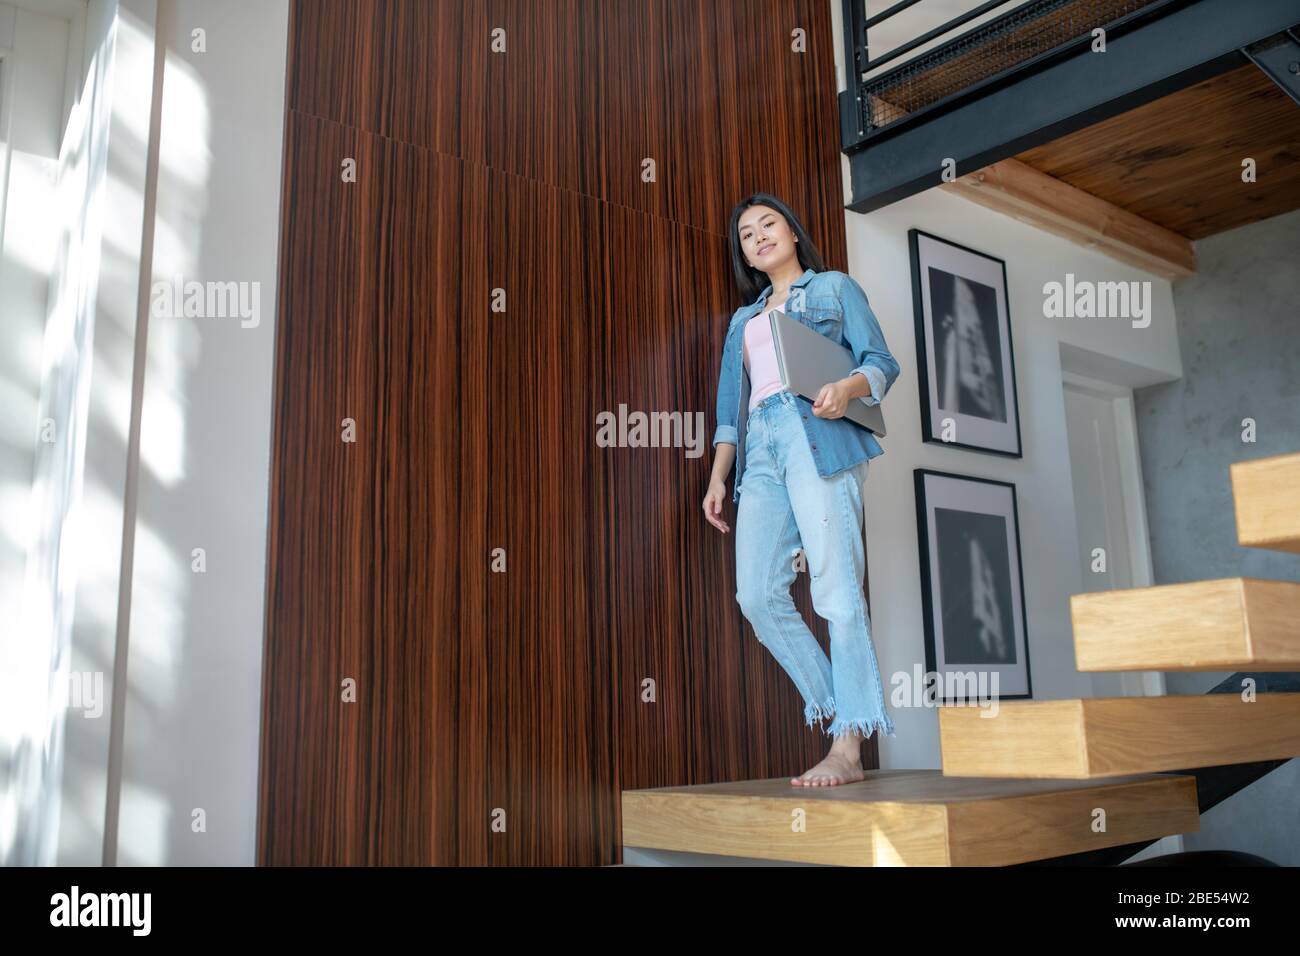 Junge Frau, die auf Treppen steht, Laptop unter dem Arm hält und sich an die Wand lehnt Stockfoto